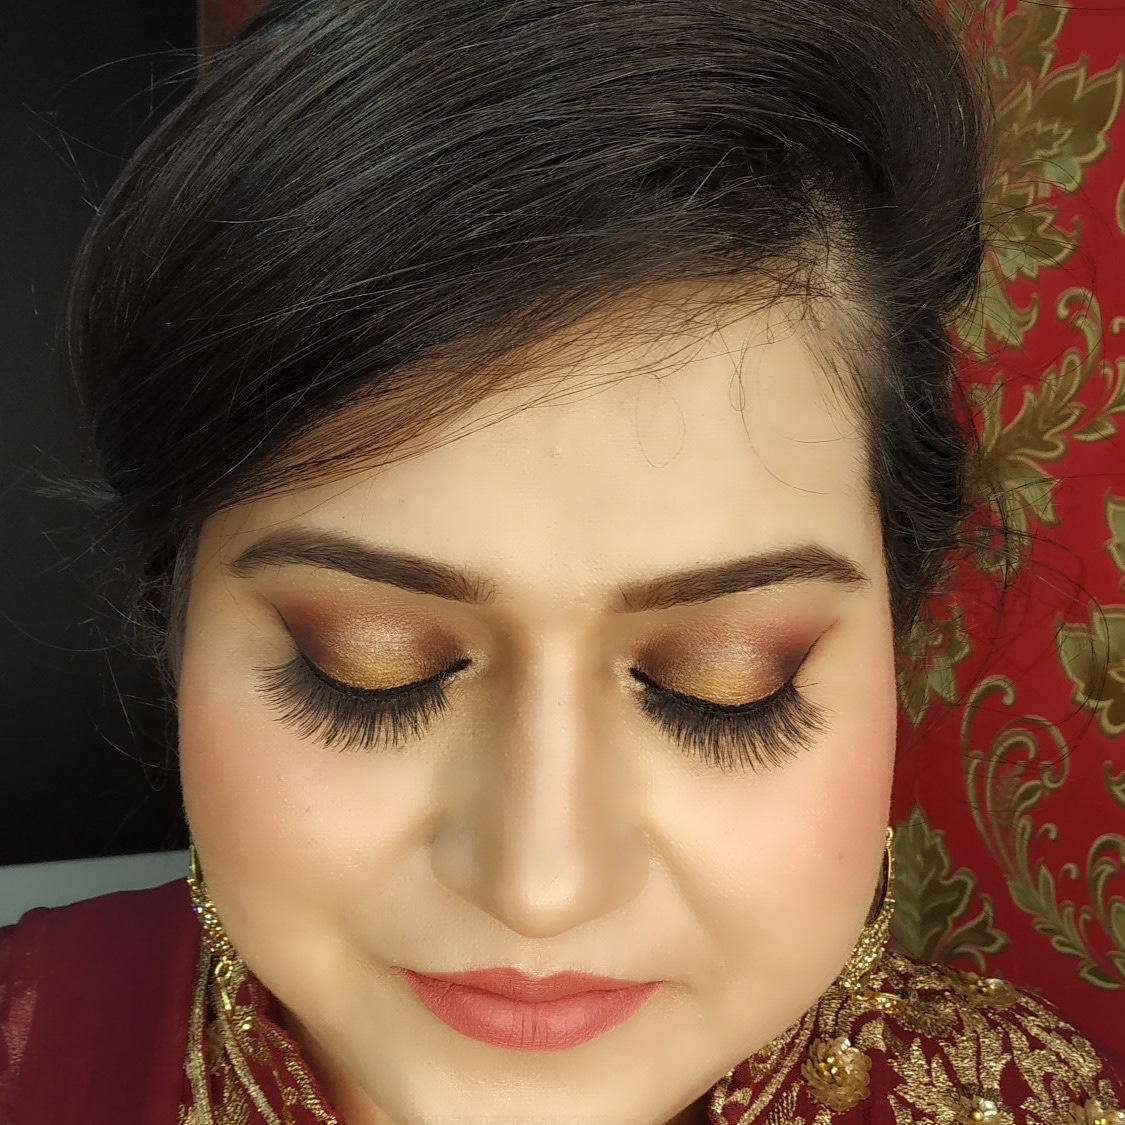 scintilla-makeovers-makeup-artist-delhi-ncr